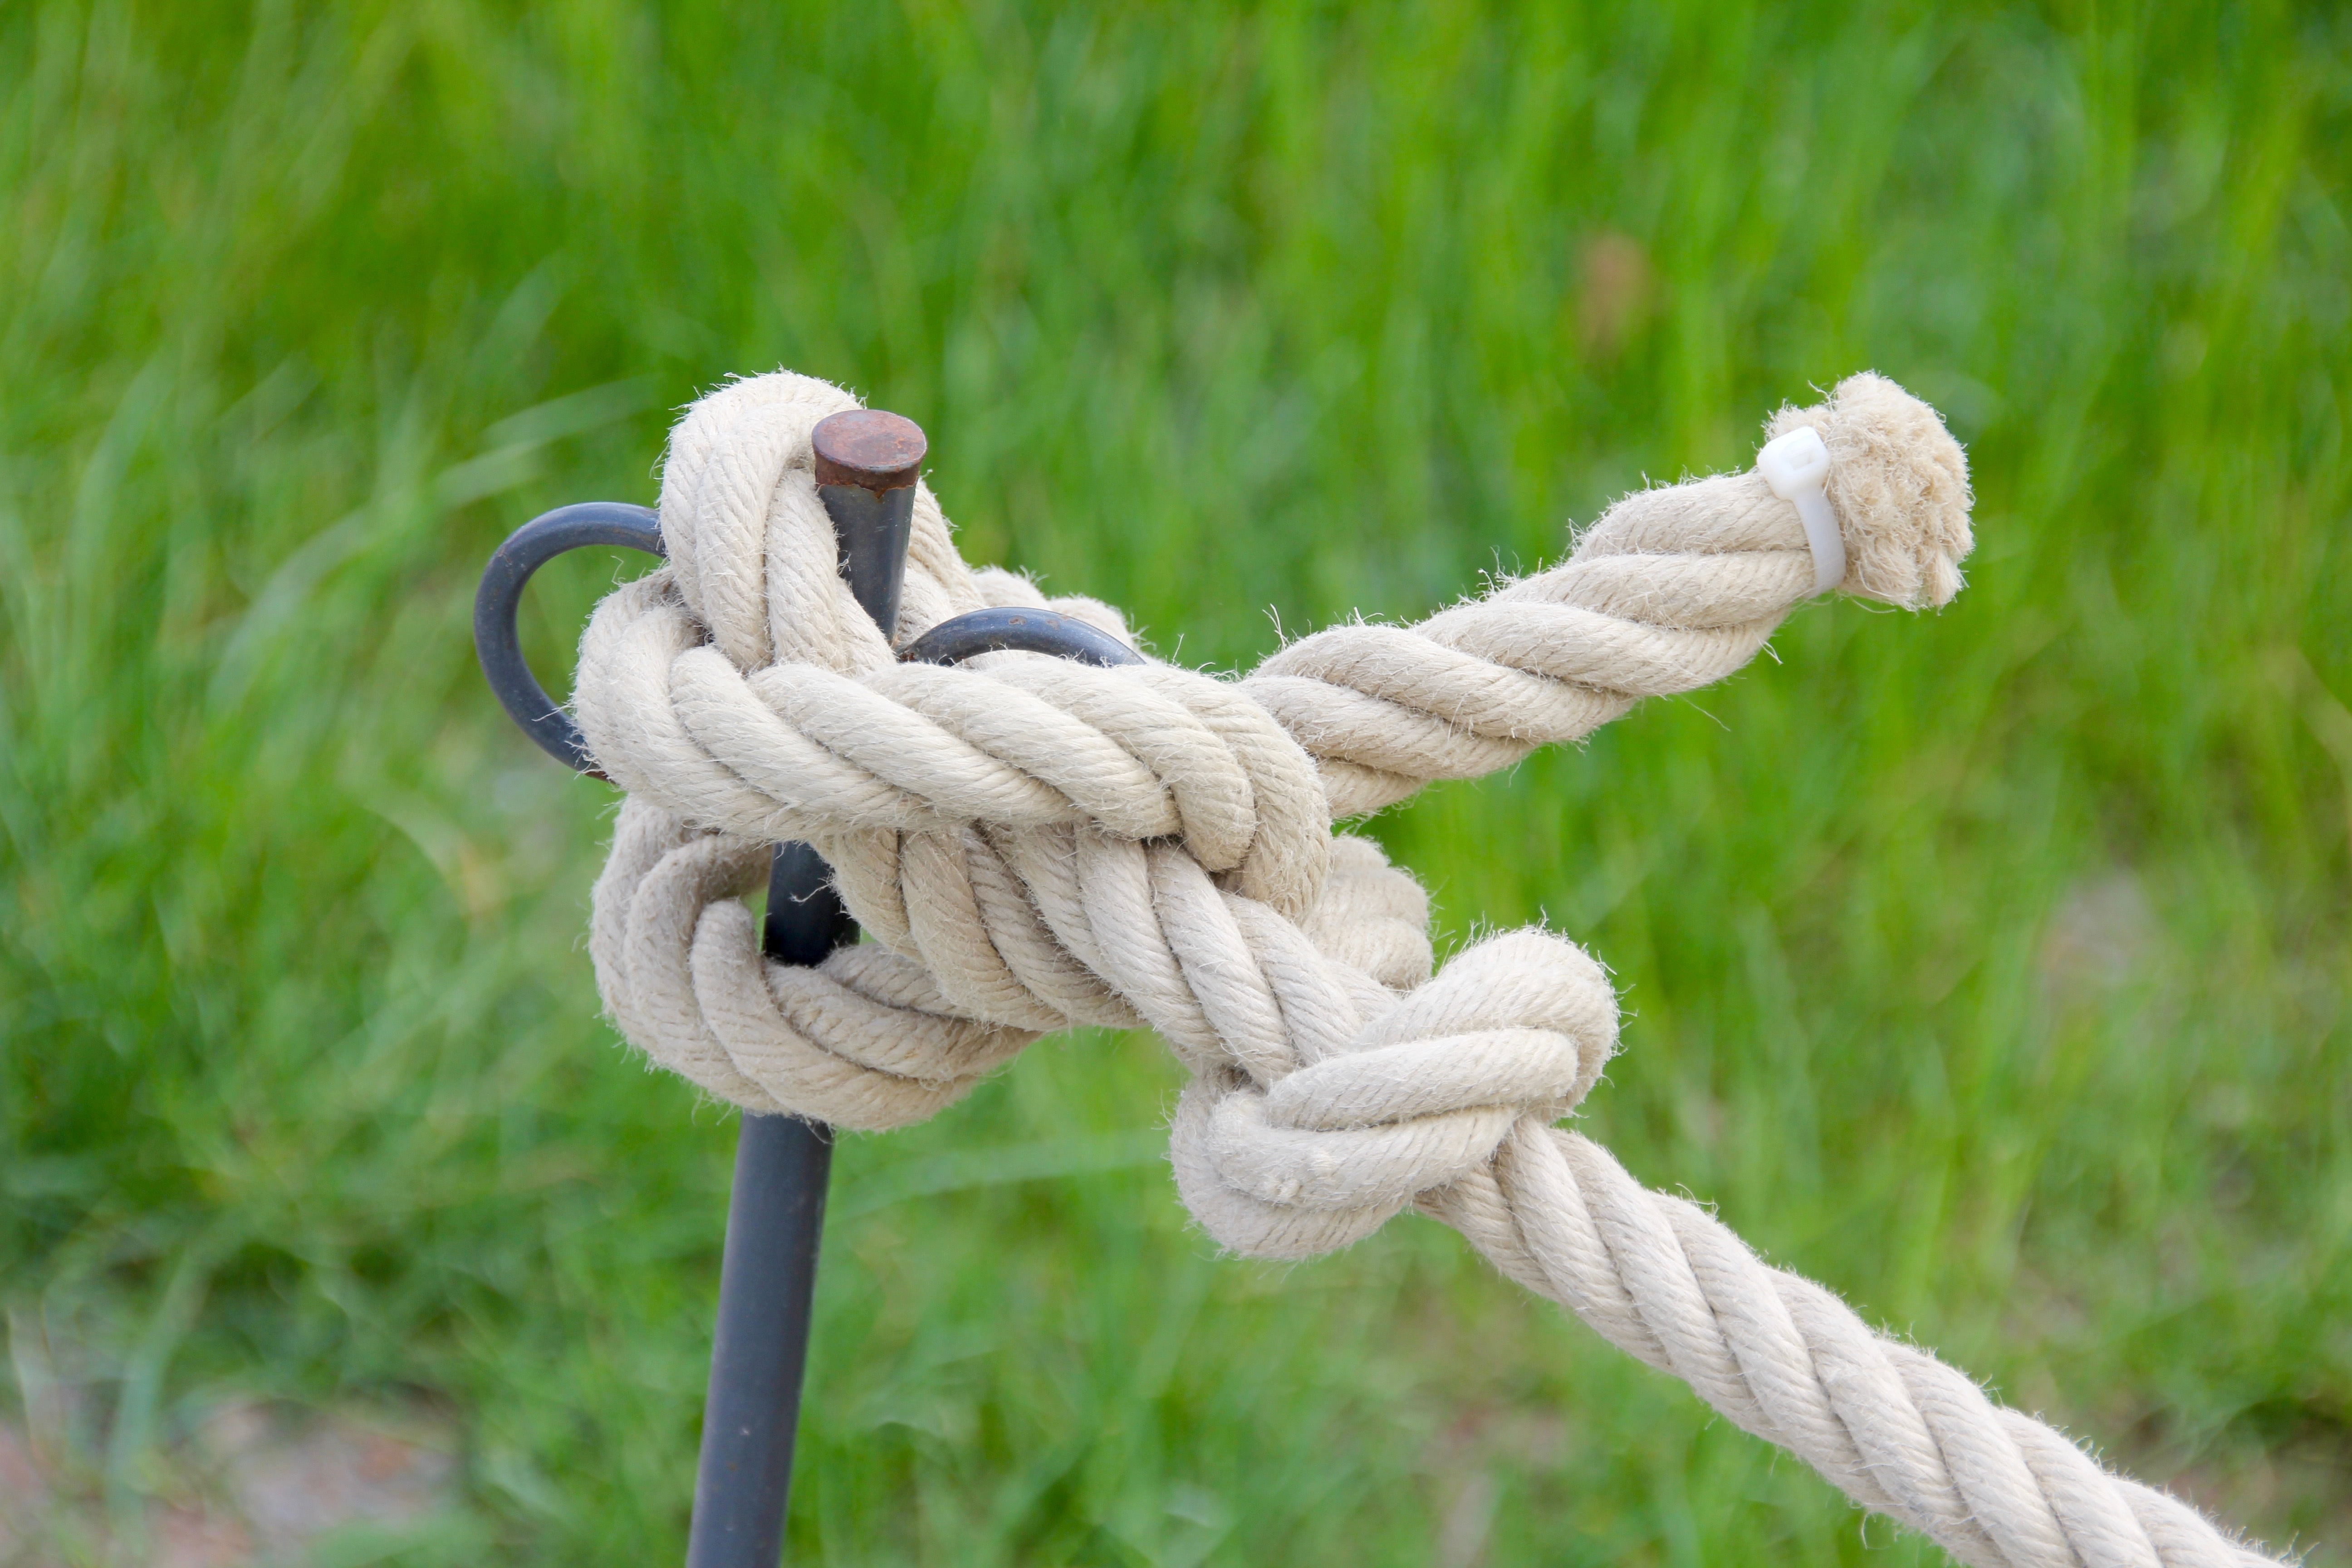 Aussie ropeworks